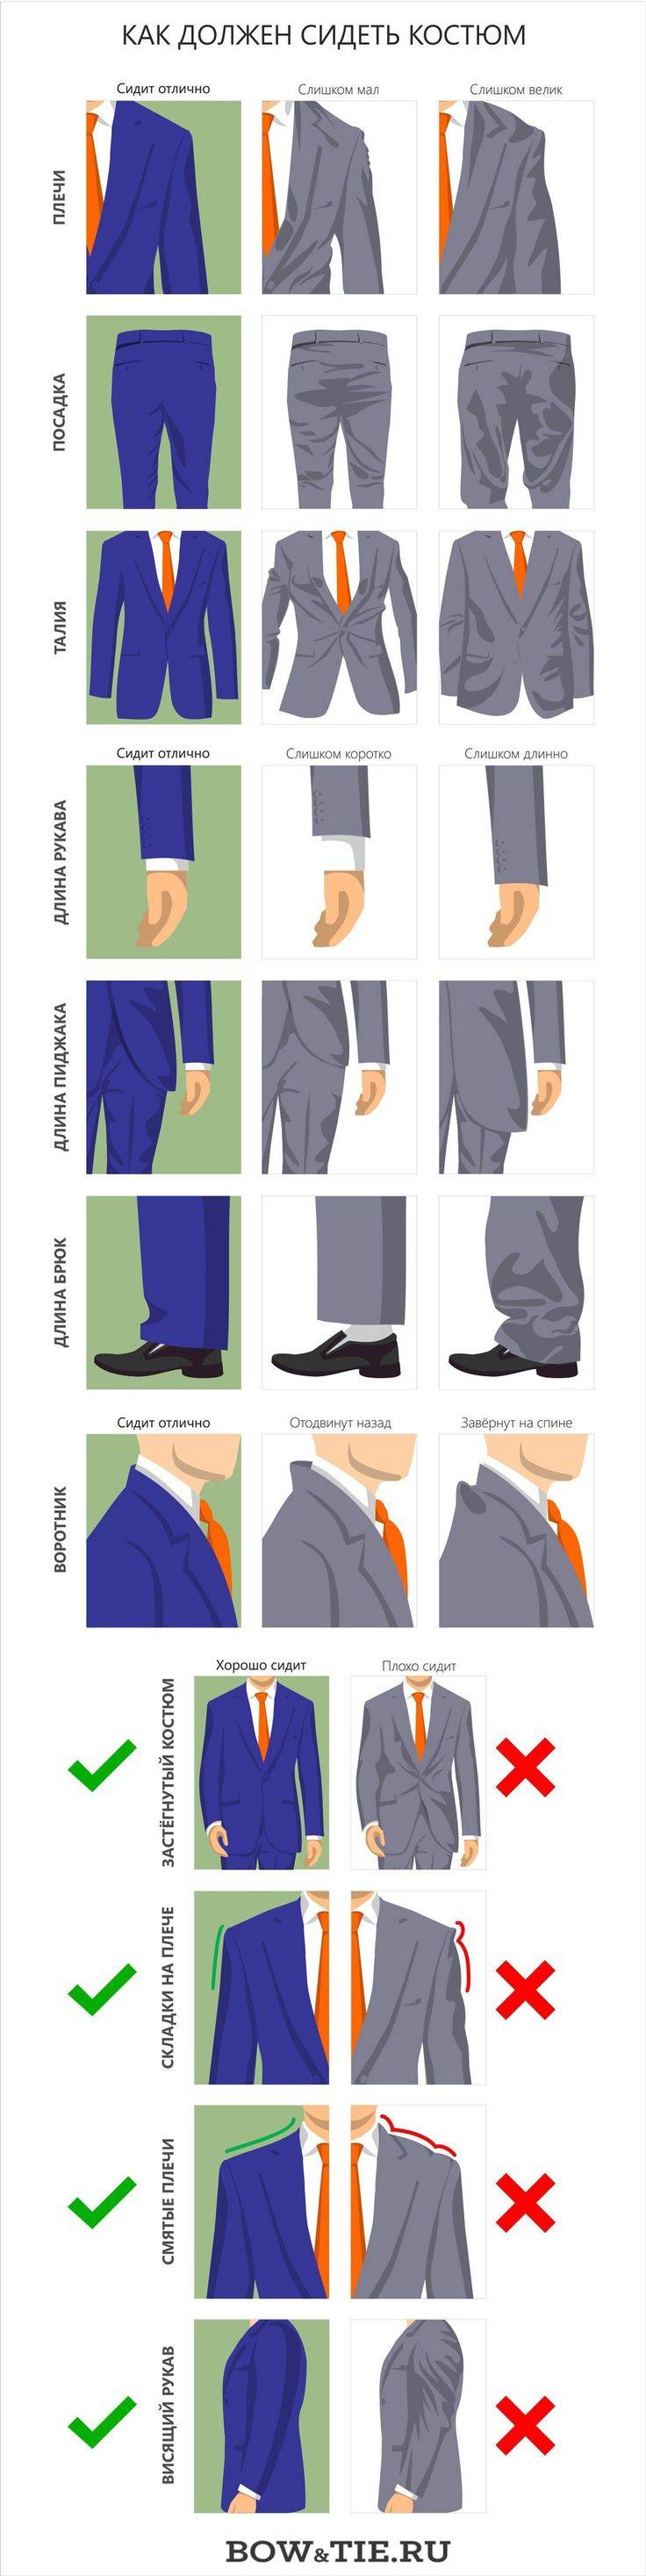 Как выбрать мужской пиджак правильно: все о фасонах и стилях мужских пиджаков